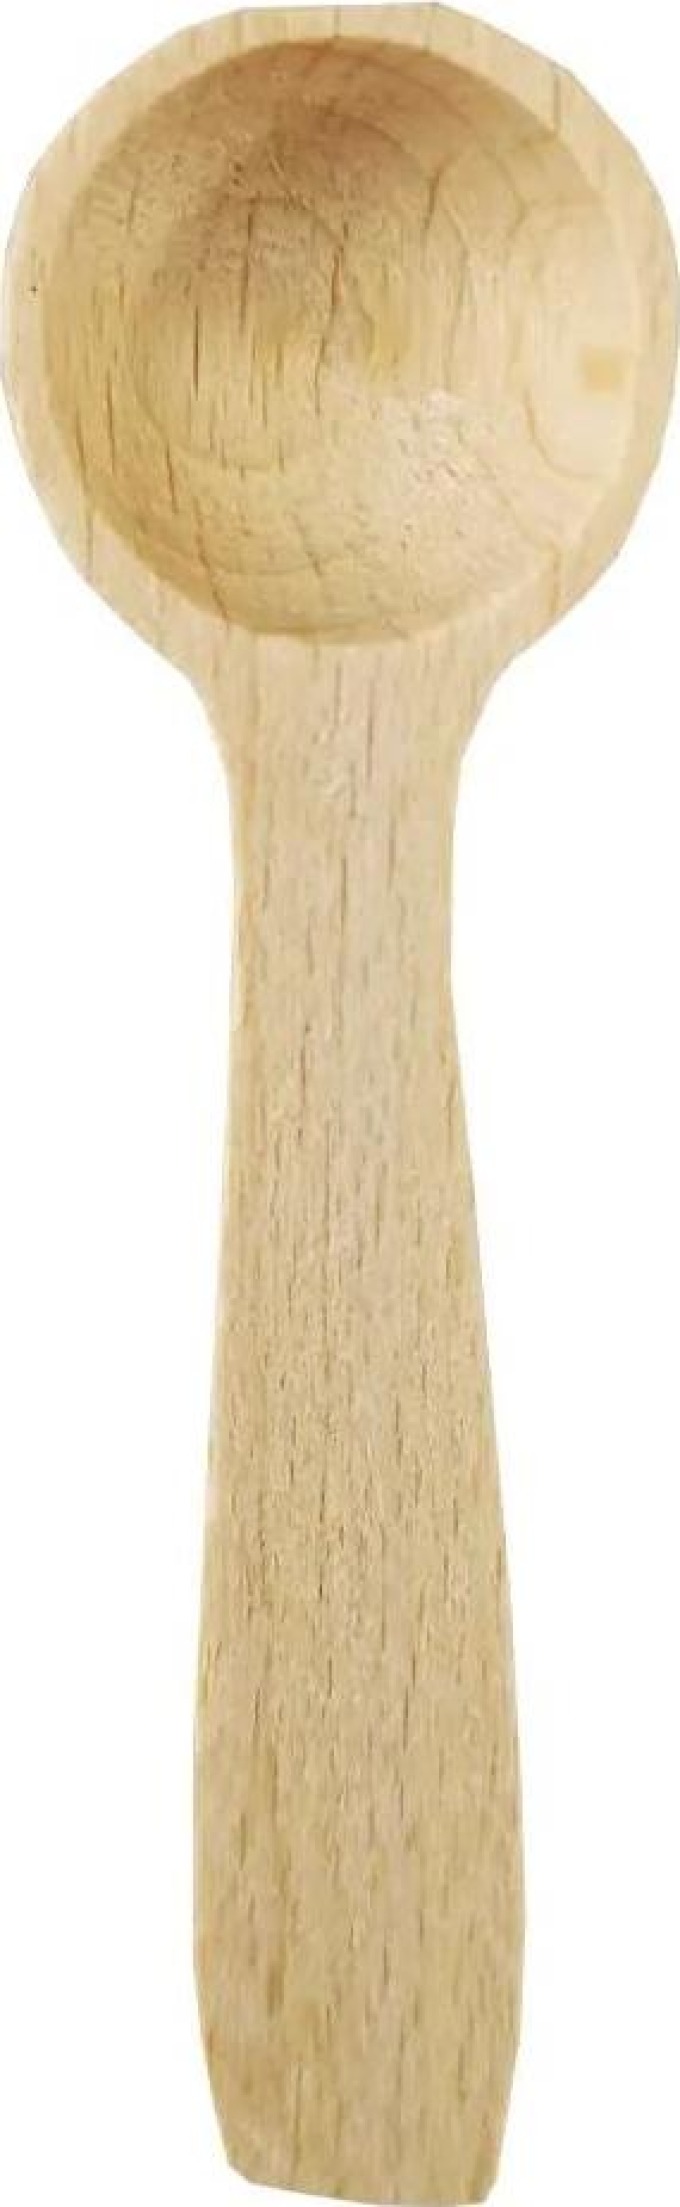 Malá dřevěná lžička vyrobená z masivního bukového dřeva, délka 7,5 cm, vhodná pro nabírání soli nebo koření